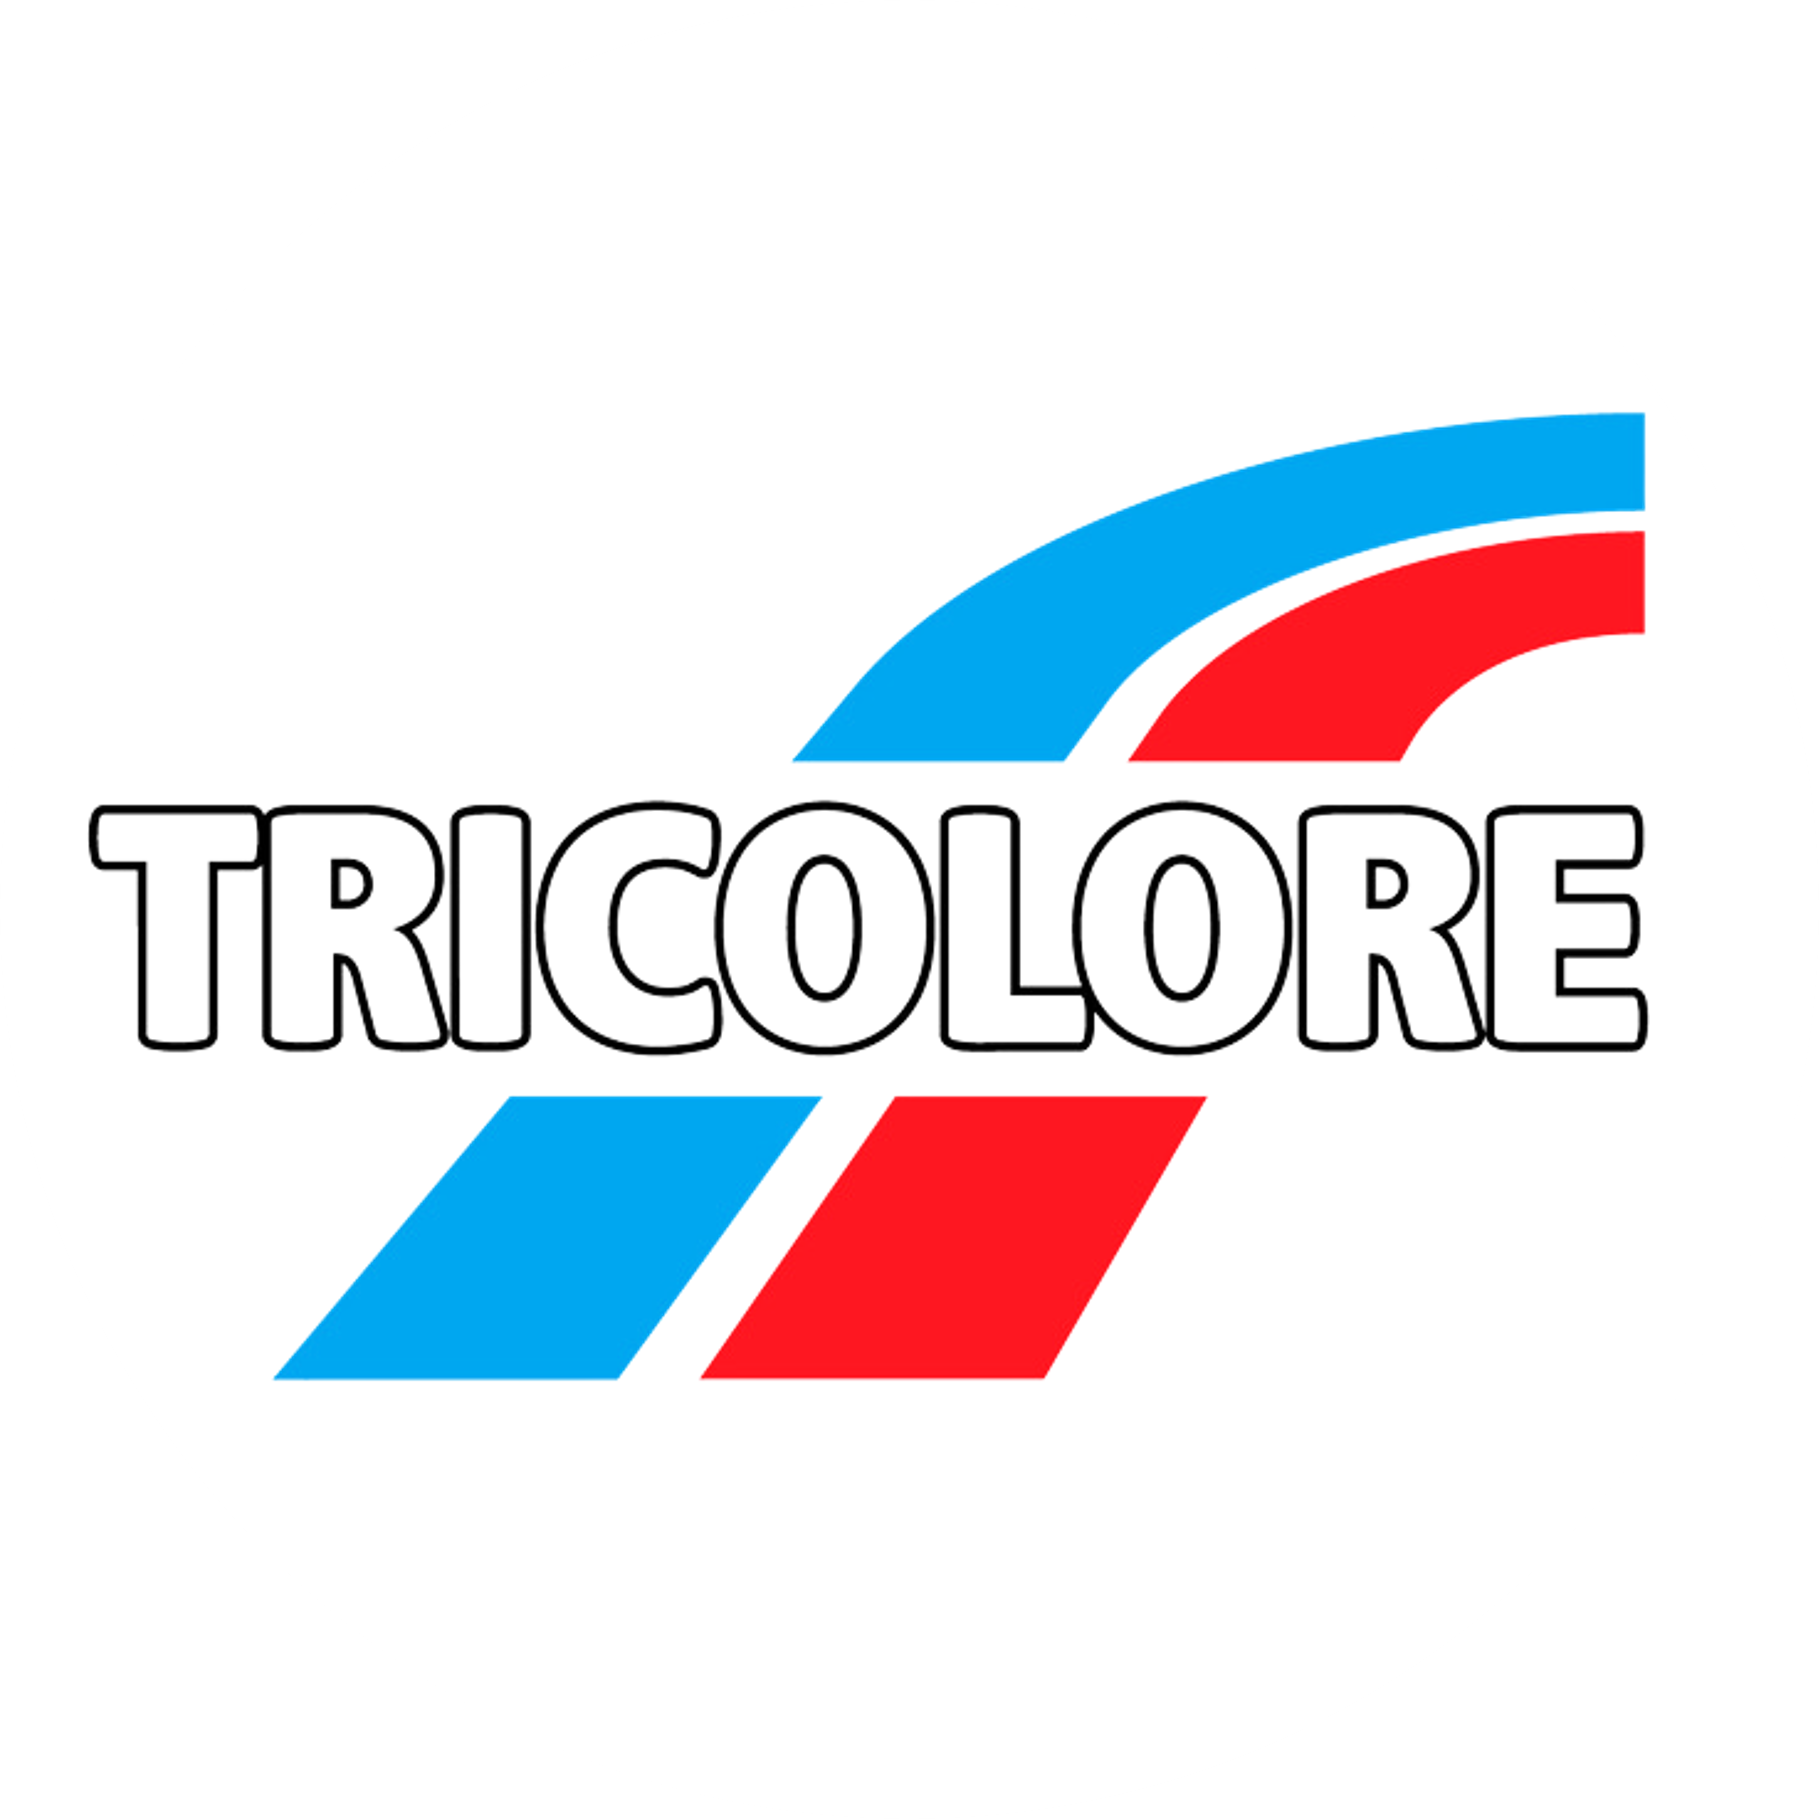 Tricolore Round